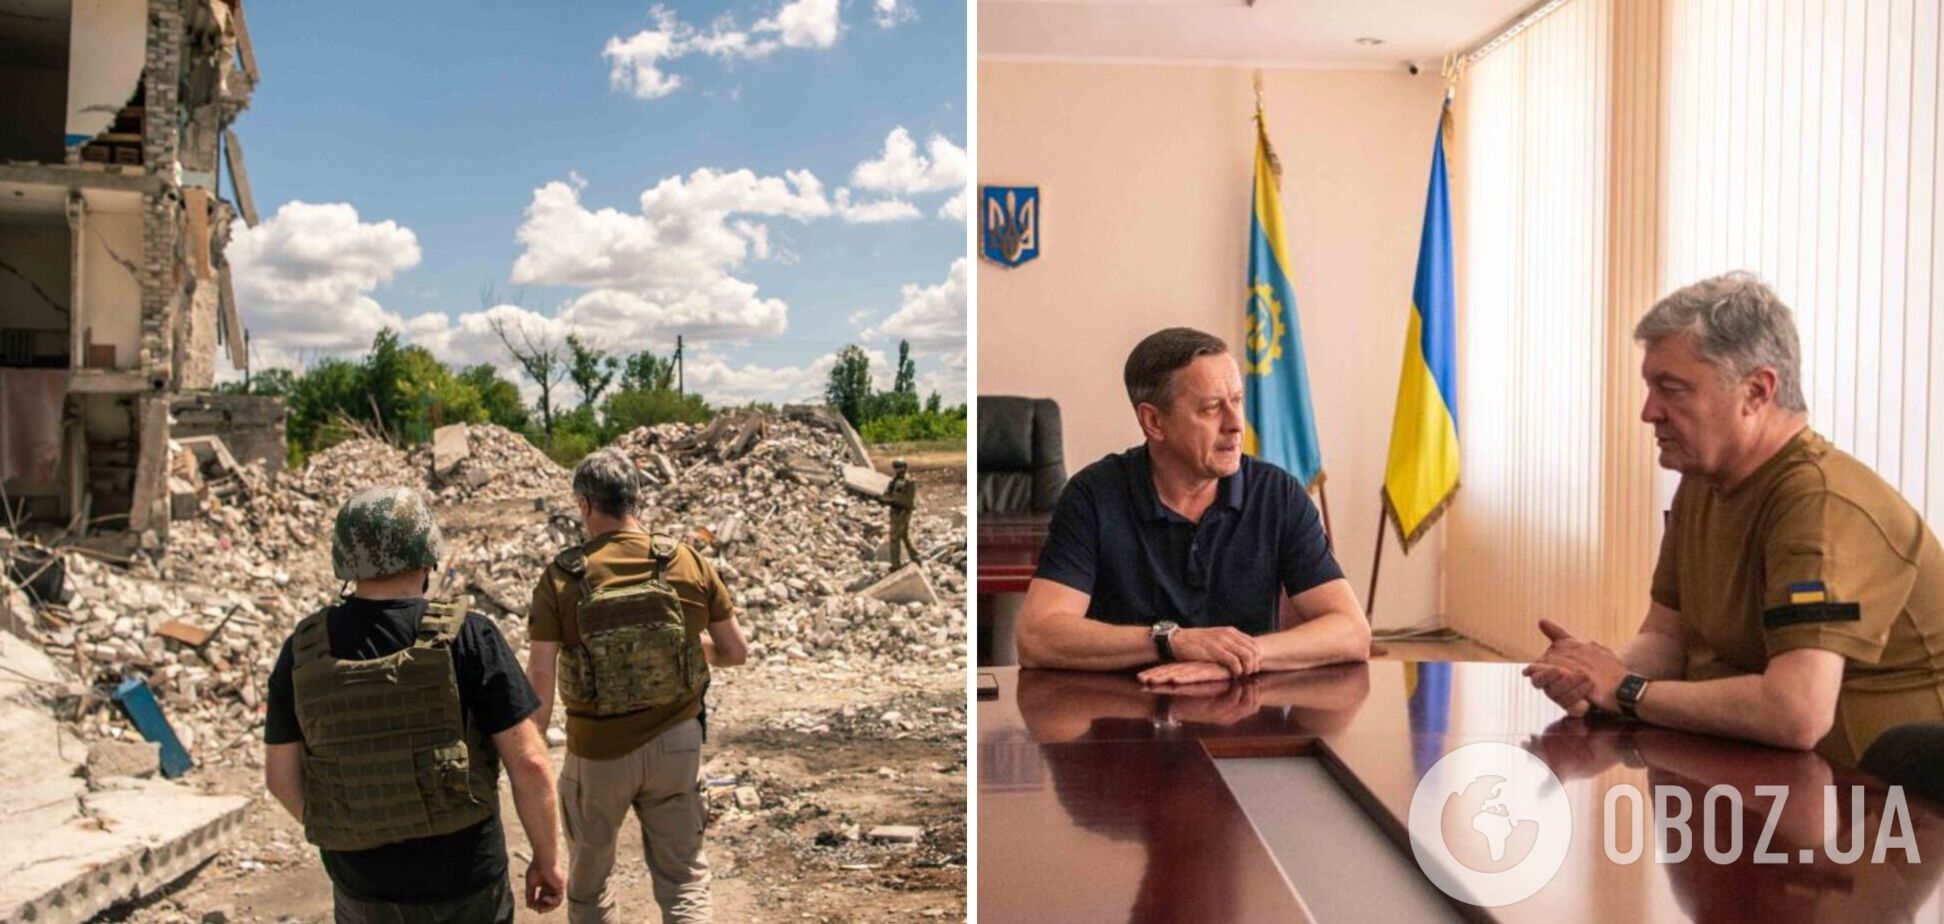 Порошенко посетил Краматорск и заверил, что оккупированные территории будут освобождены: Донбасс никто не сдаст. Фото